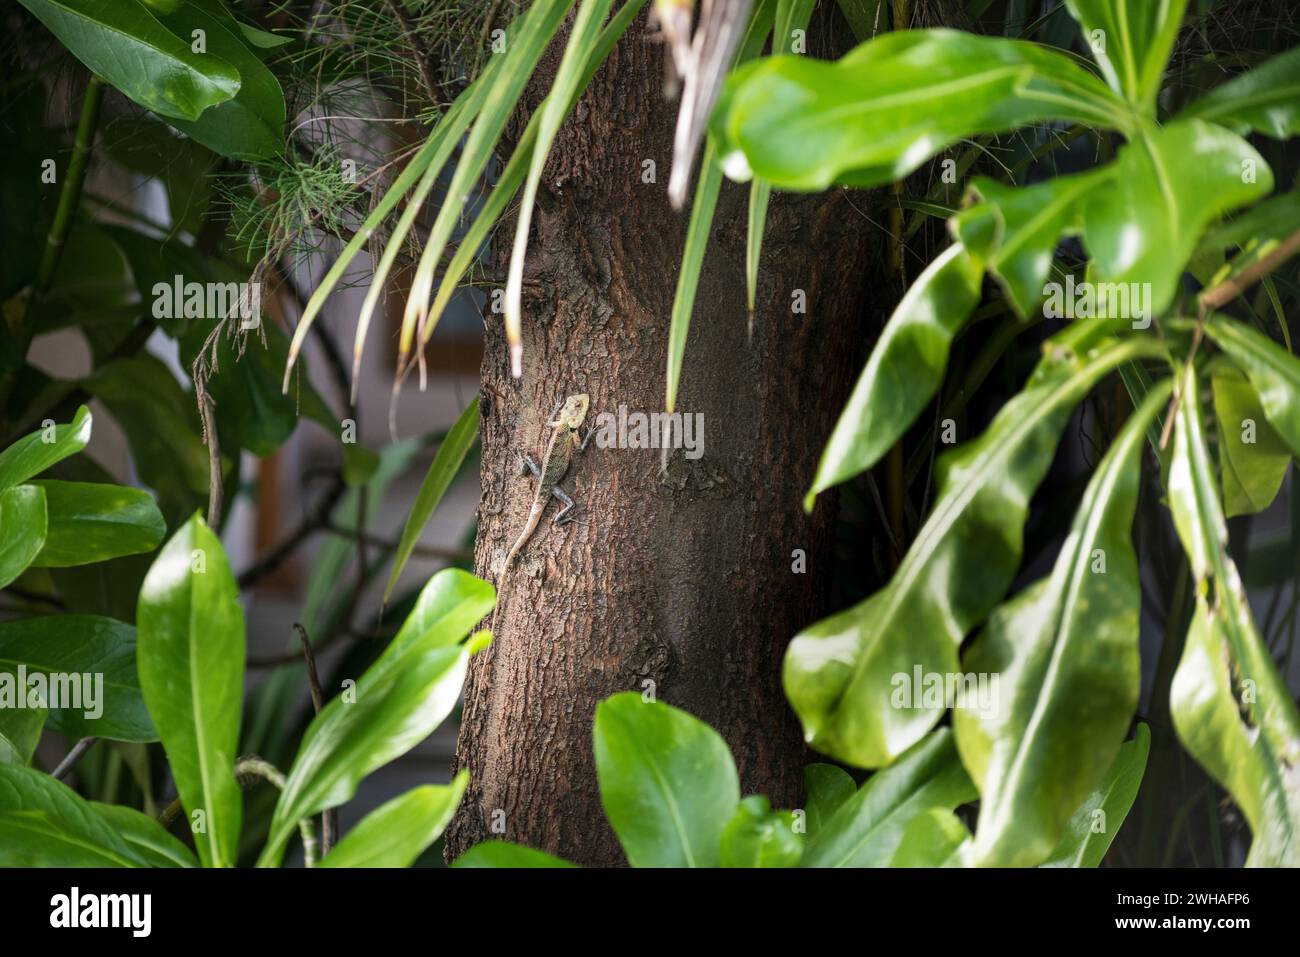 Eine Garteneidechse, auch bekannt als Blutsauger, thront anmutig auf einem Baum und zeigt lebendige Schuppen und Reptilien-Eleganz in ihrem natürlichen Lebensraum Stockfoto